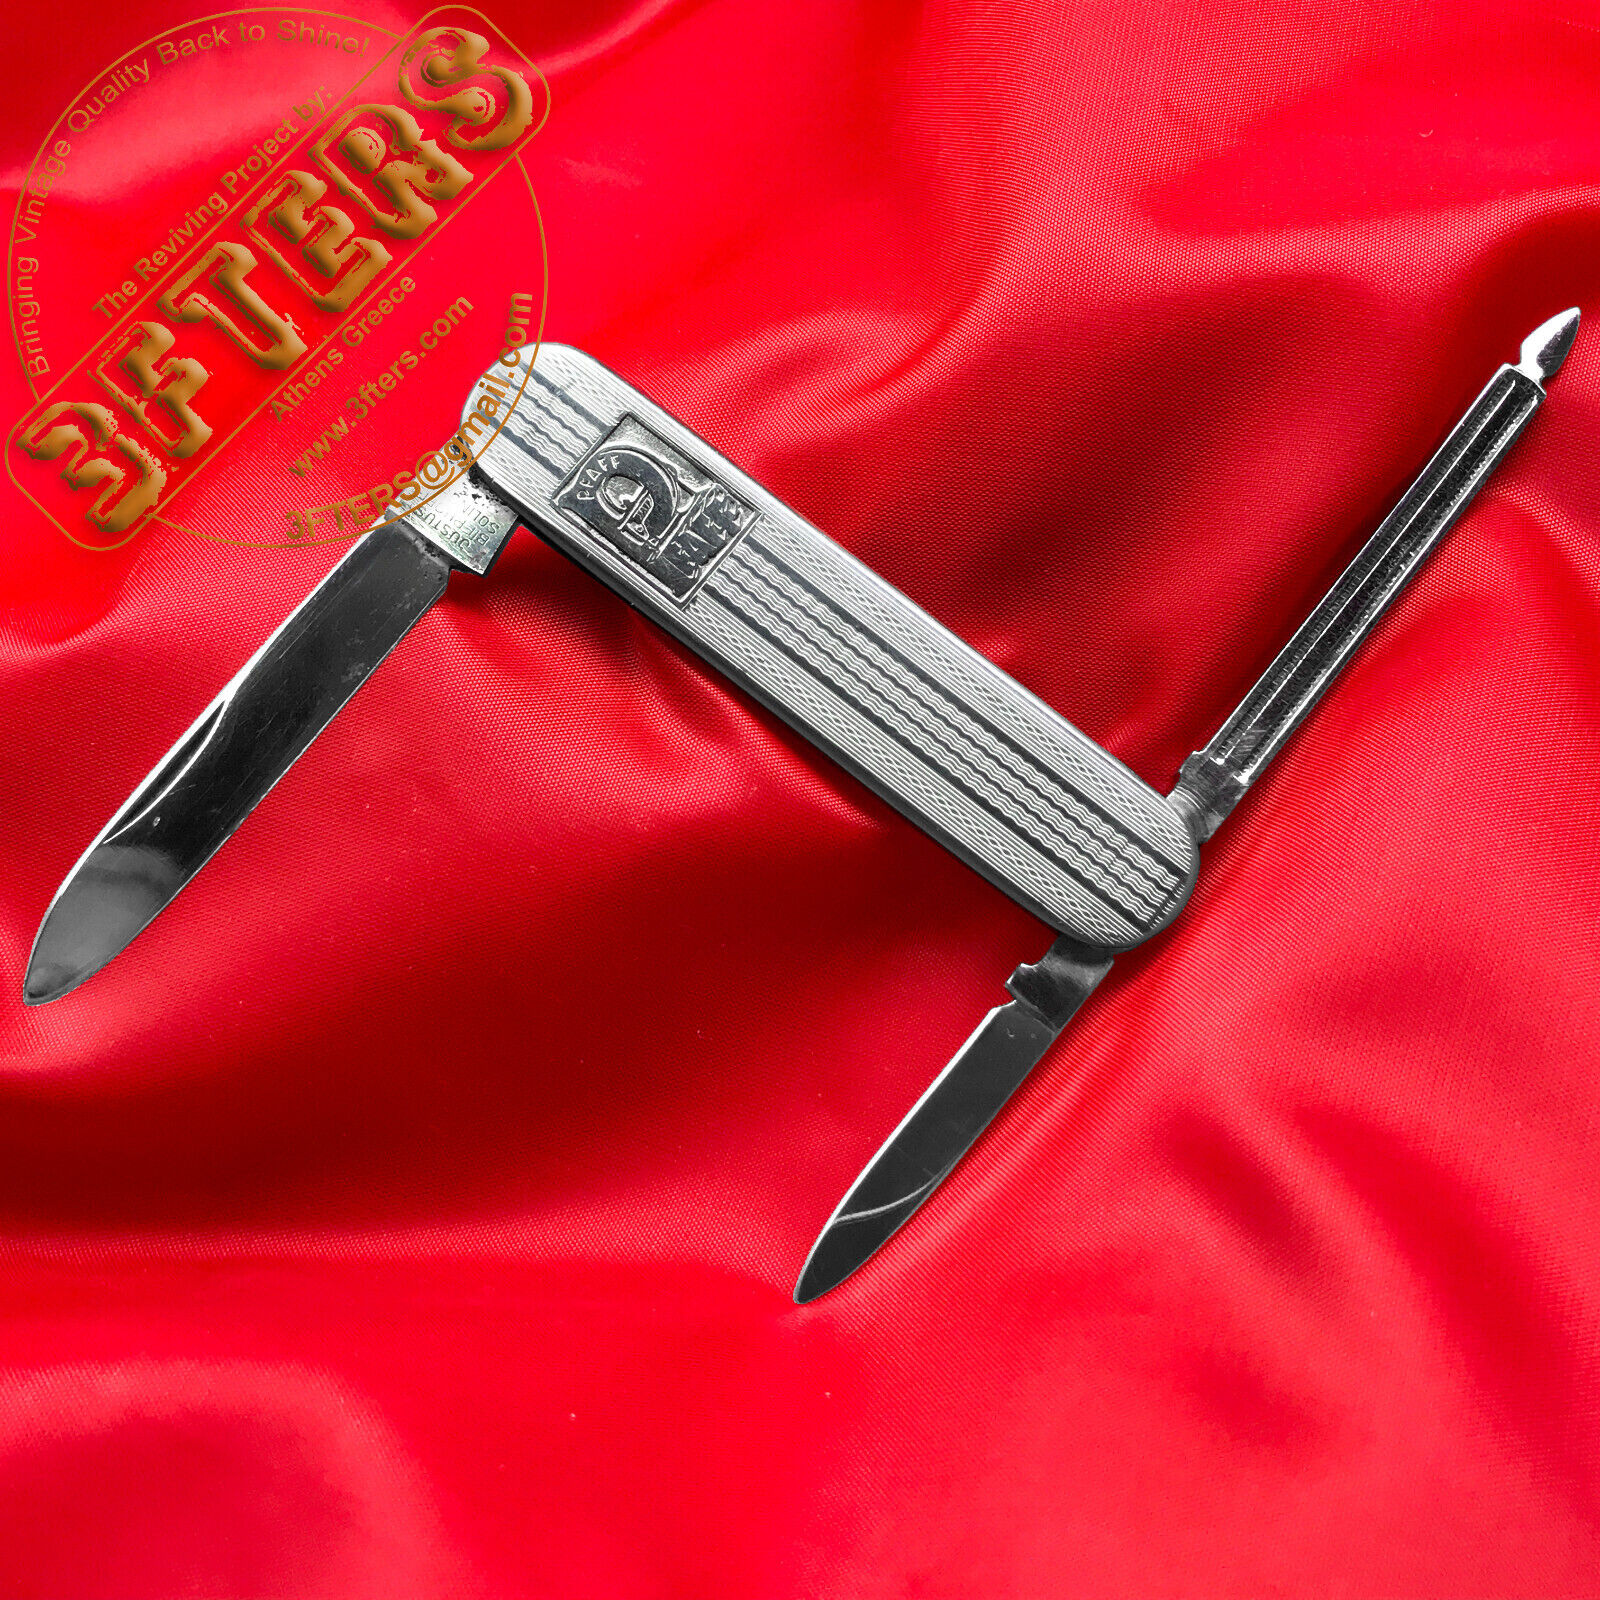 VTG PFAFF Folding Pocket Knife Engraved 1890s Embosed Solingen Stainless Steel